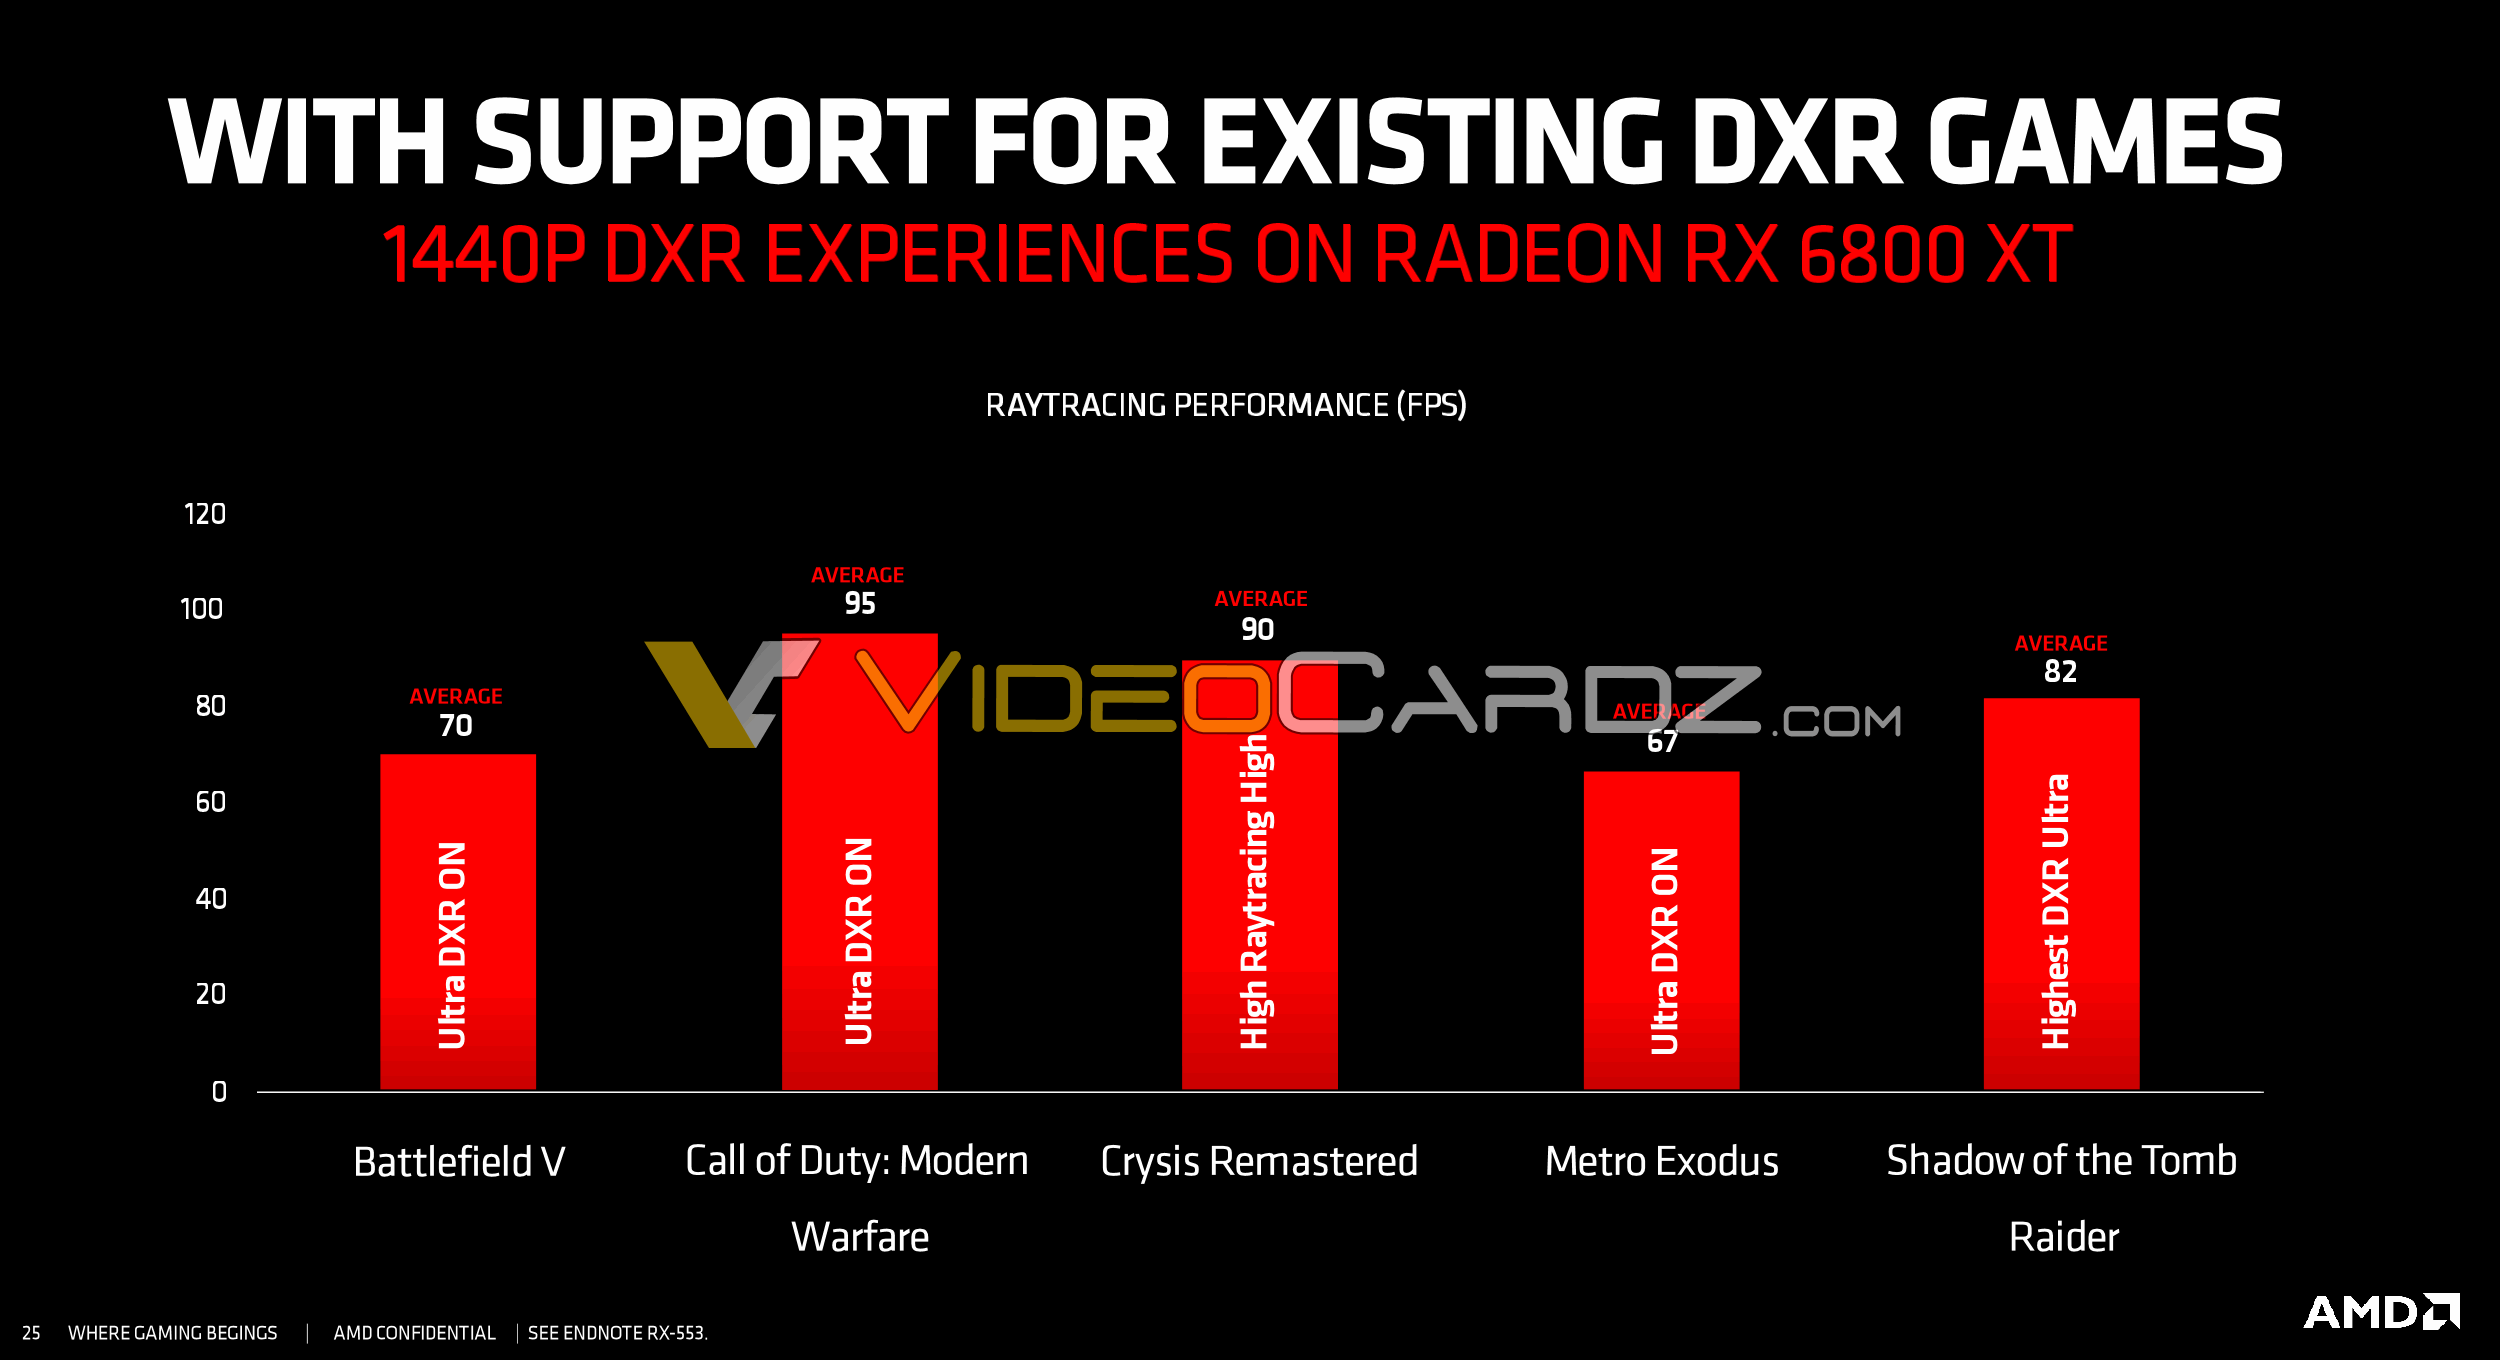 AMD 官方 Radeon RX-6800 XT DXR 光線追蹤效能